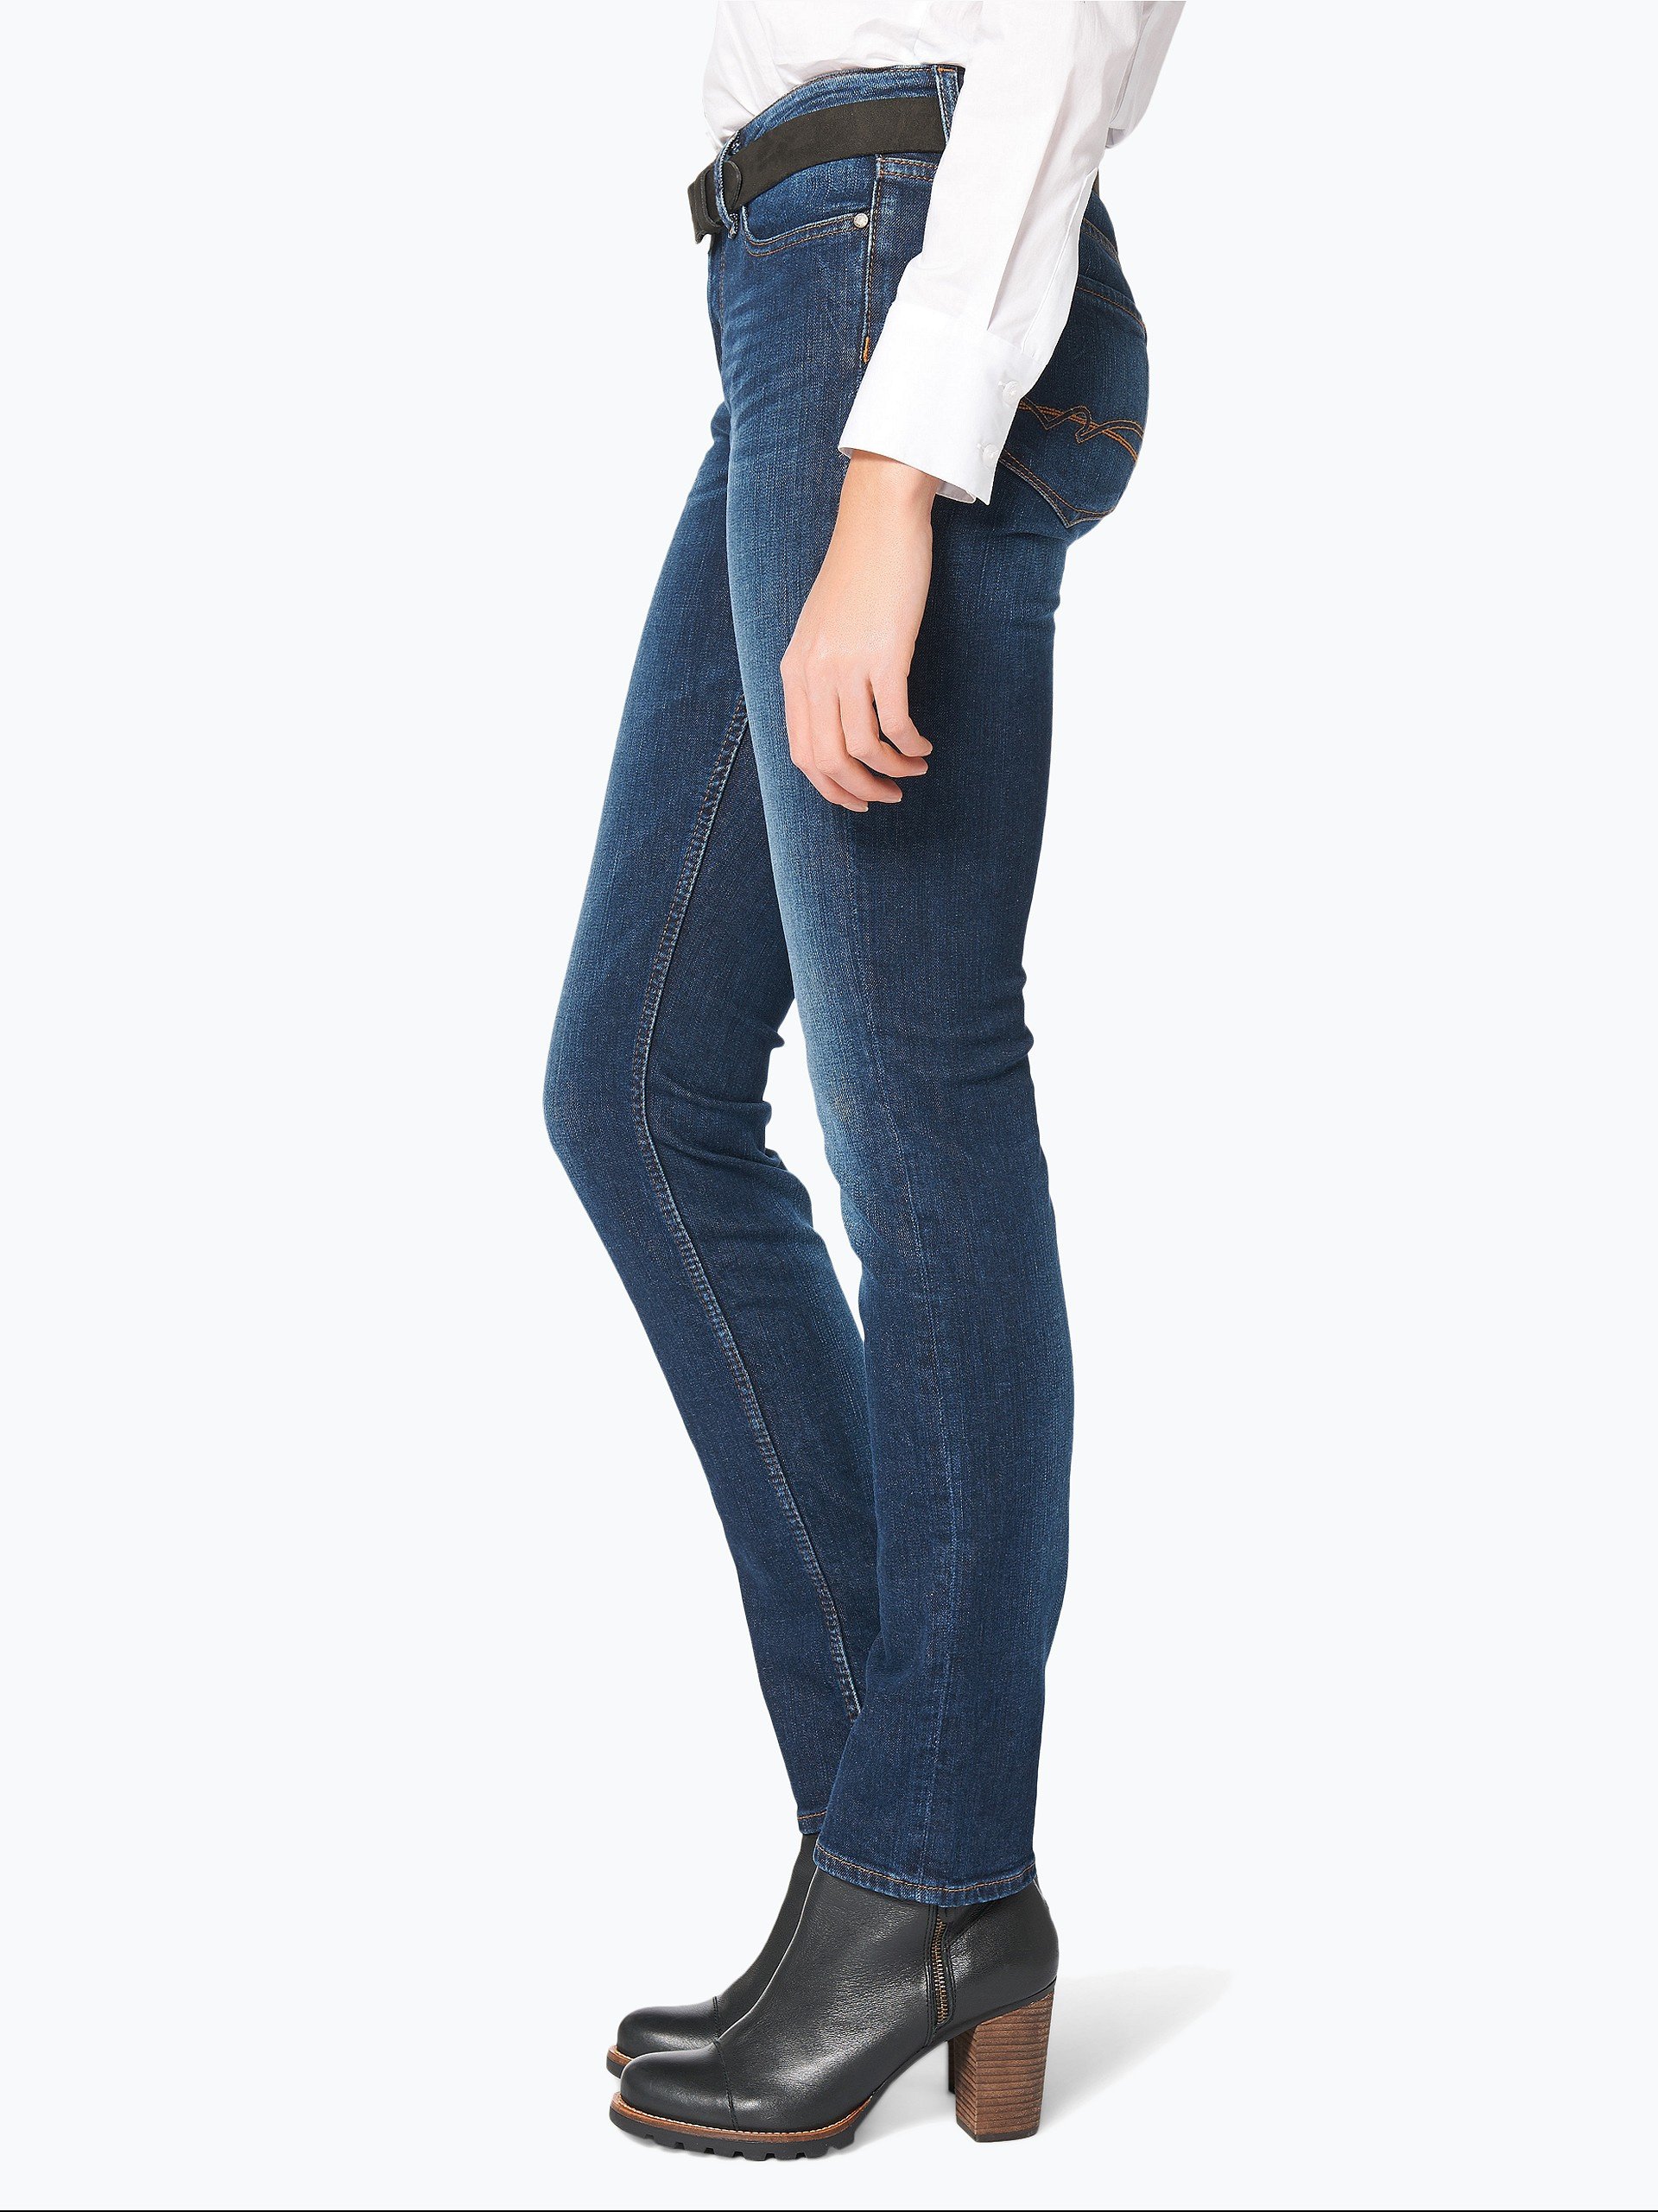 pinion Kondensere kanal Tommy Hilfiger Damen Jeans - Rome online kaufen | VANGRAAF.COM